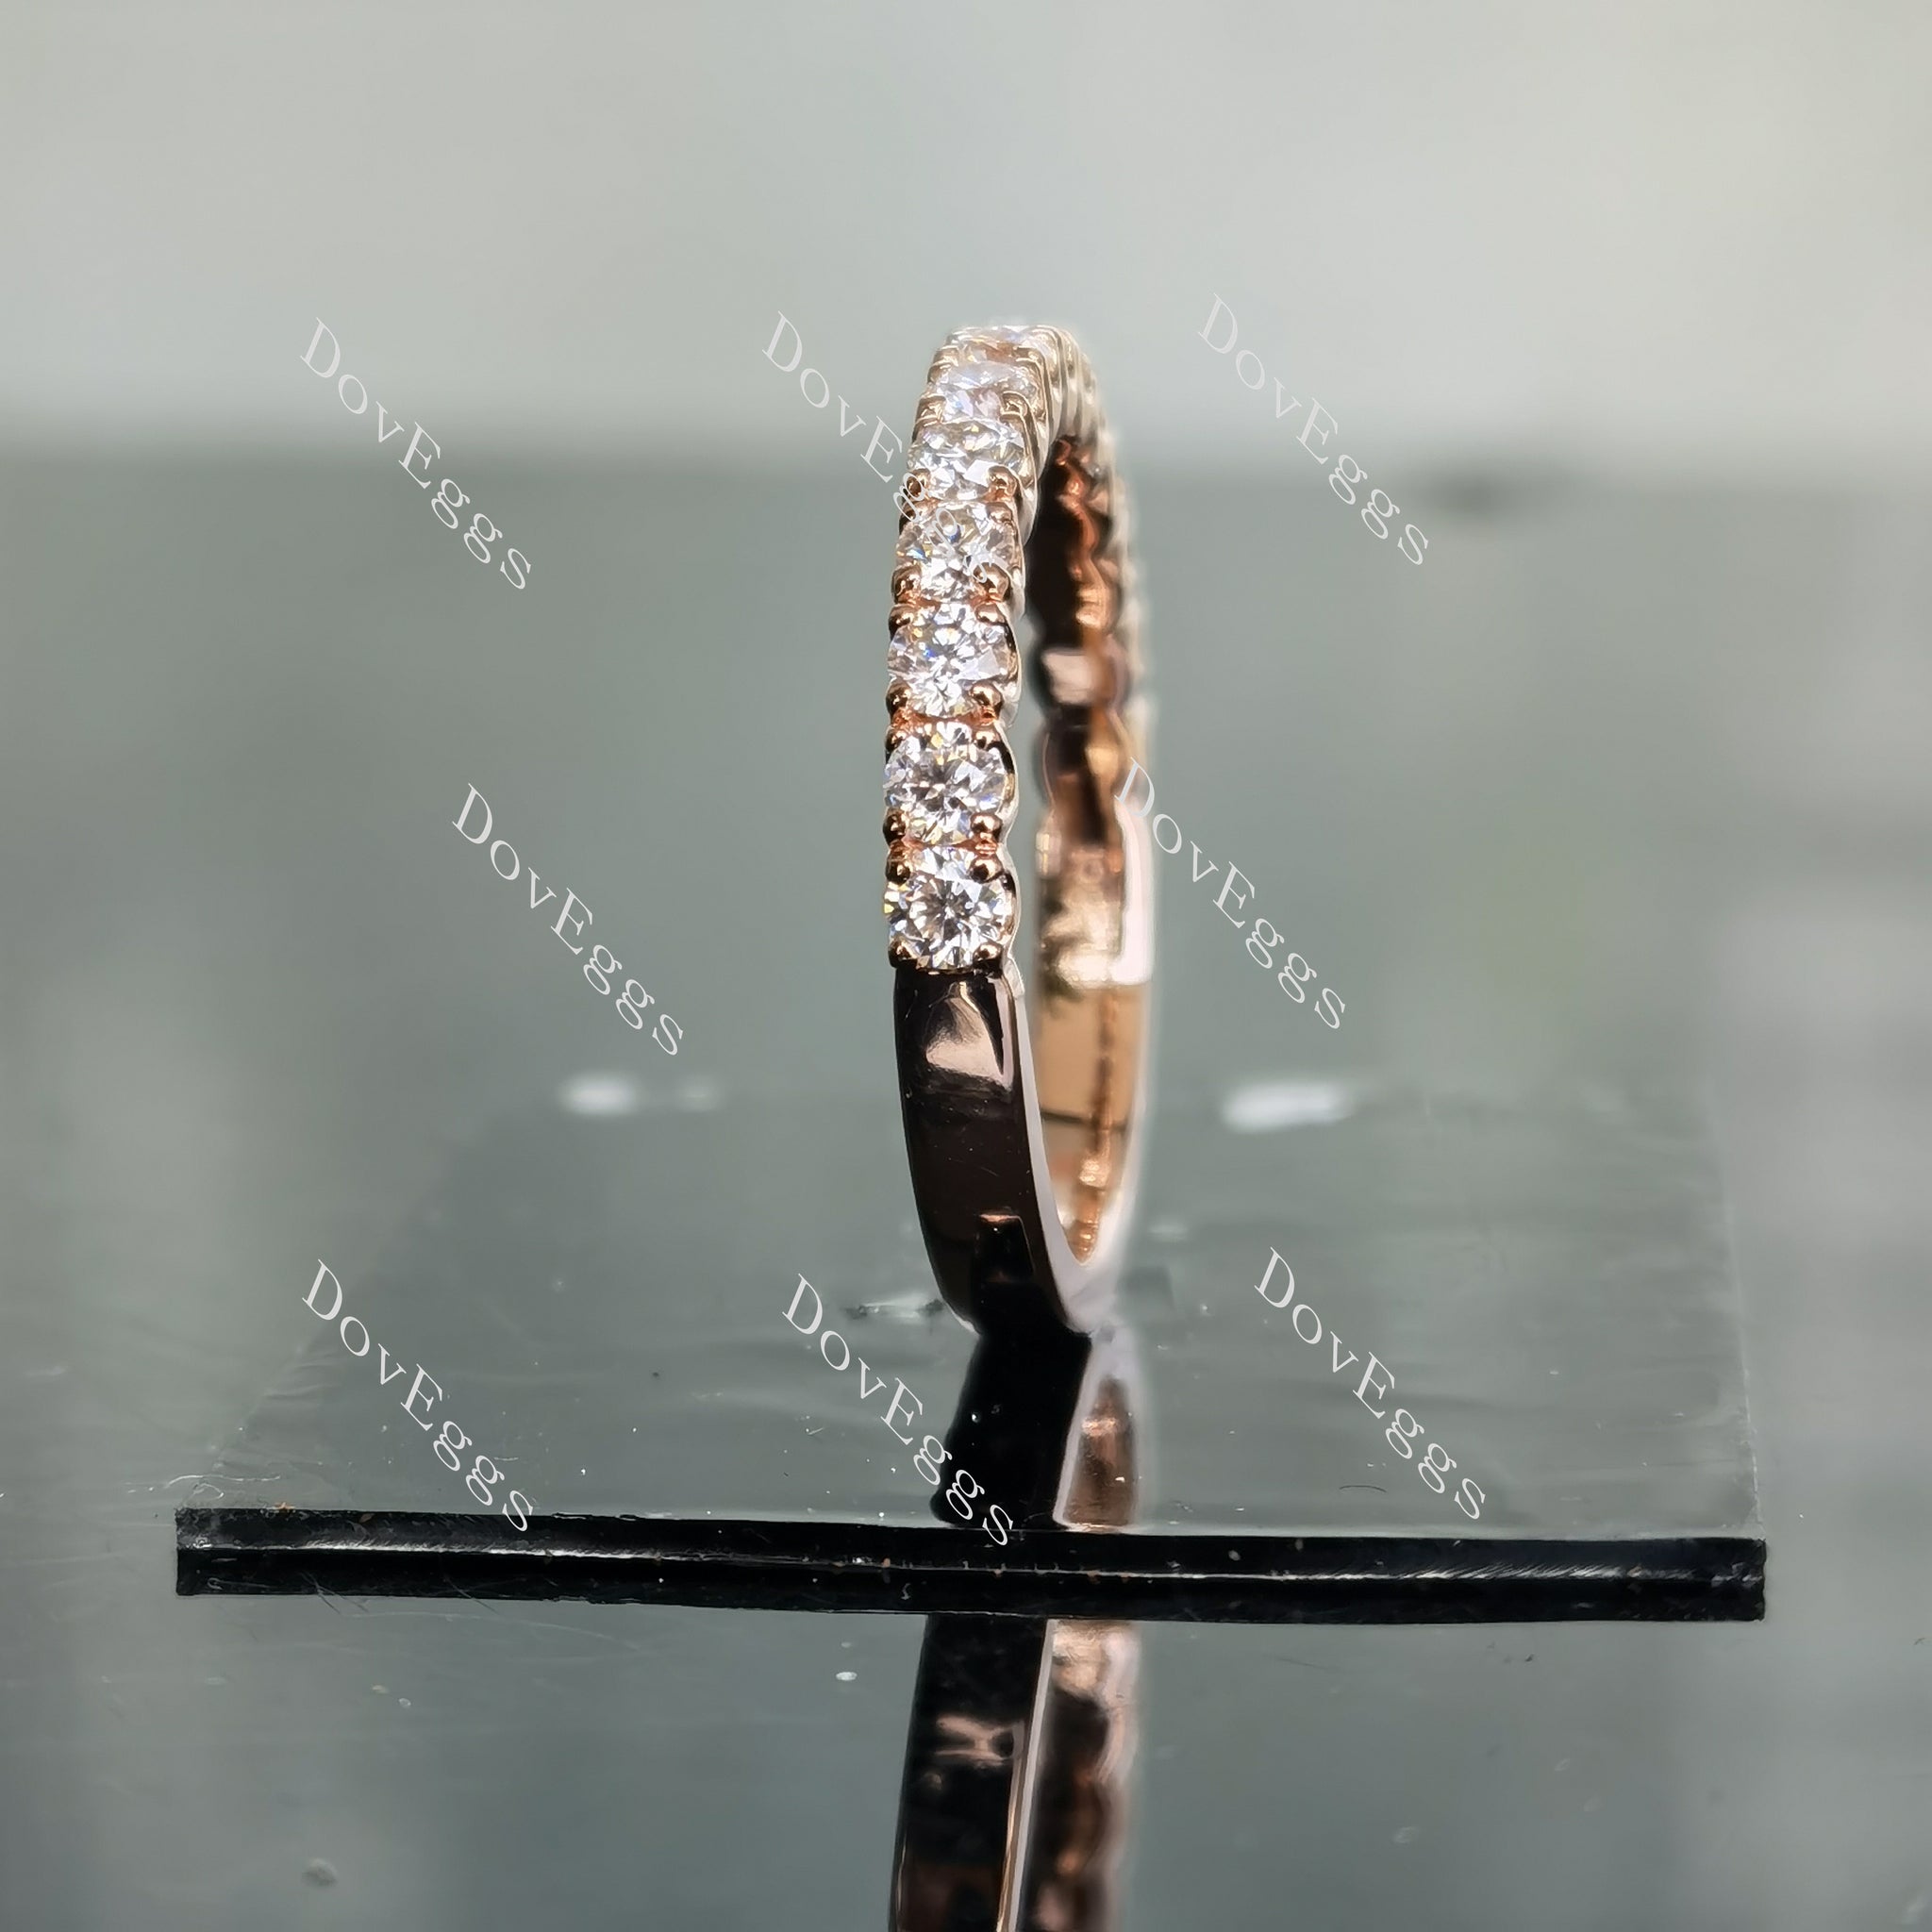 The Laurelelle halo moissanite bridal set (2 rings)